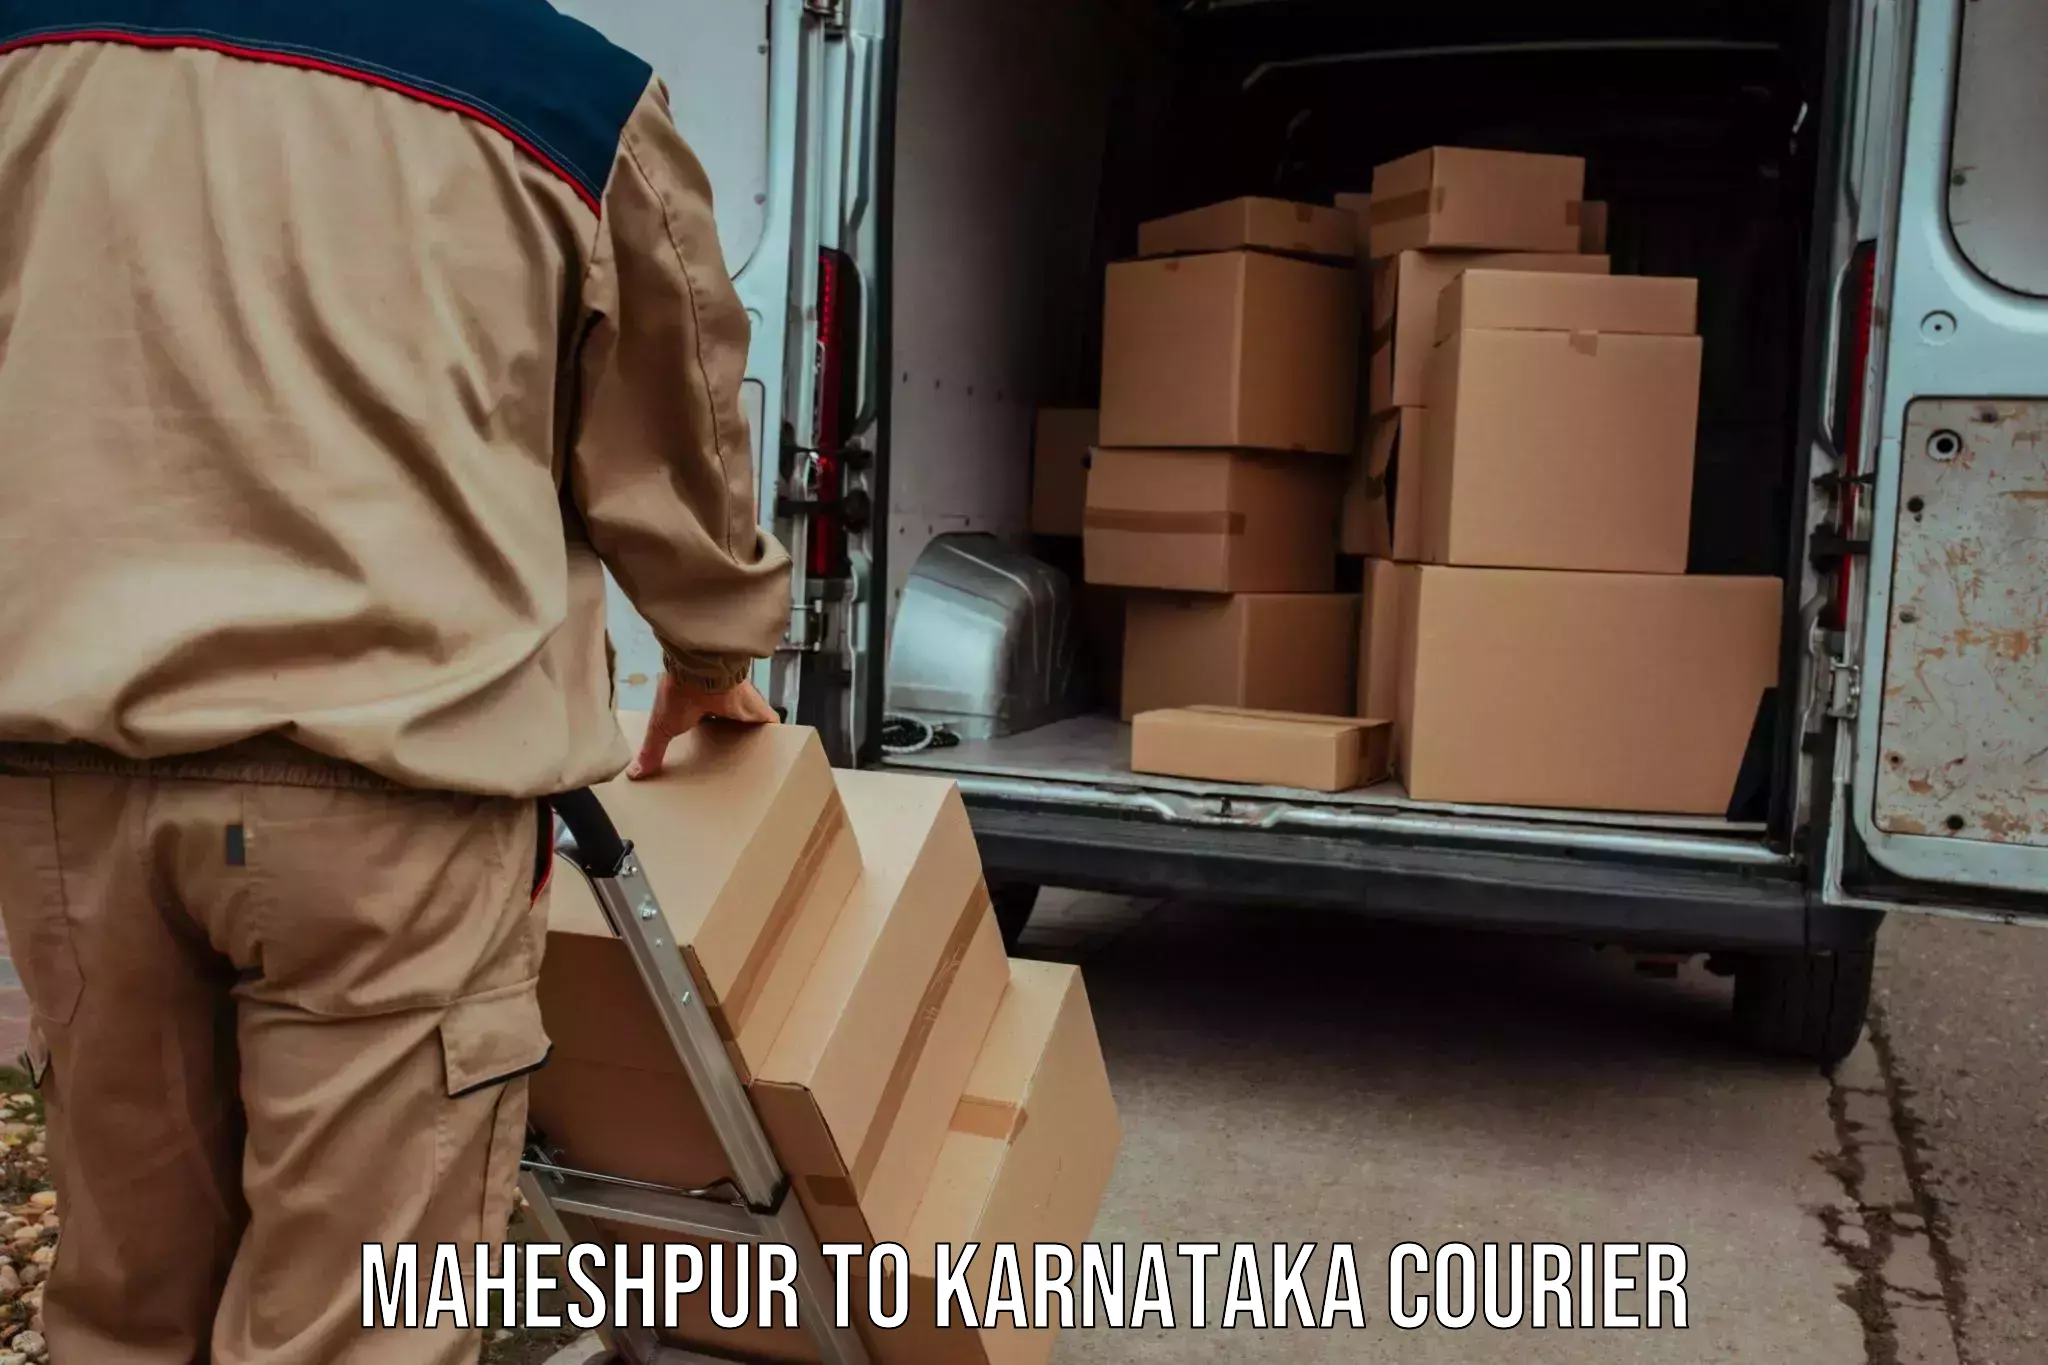 Expedited shipping methods Maheshpur to Sringeri